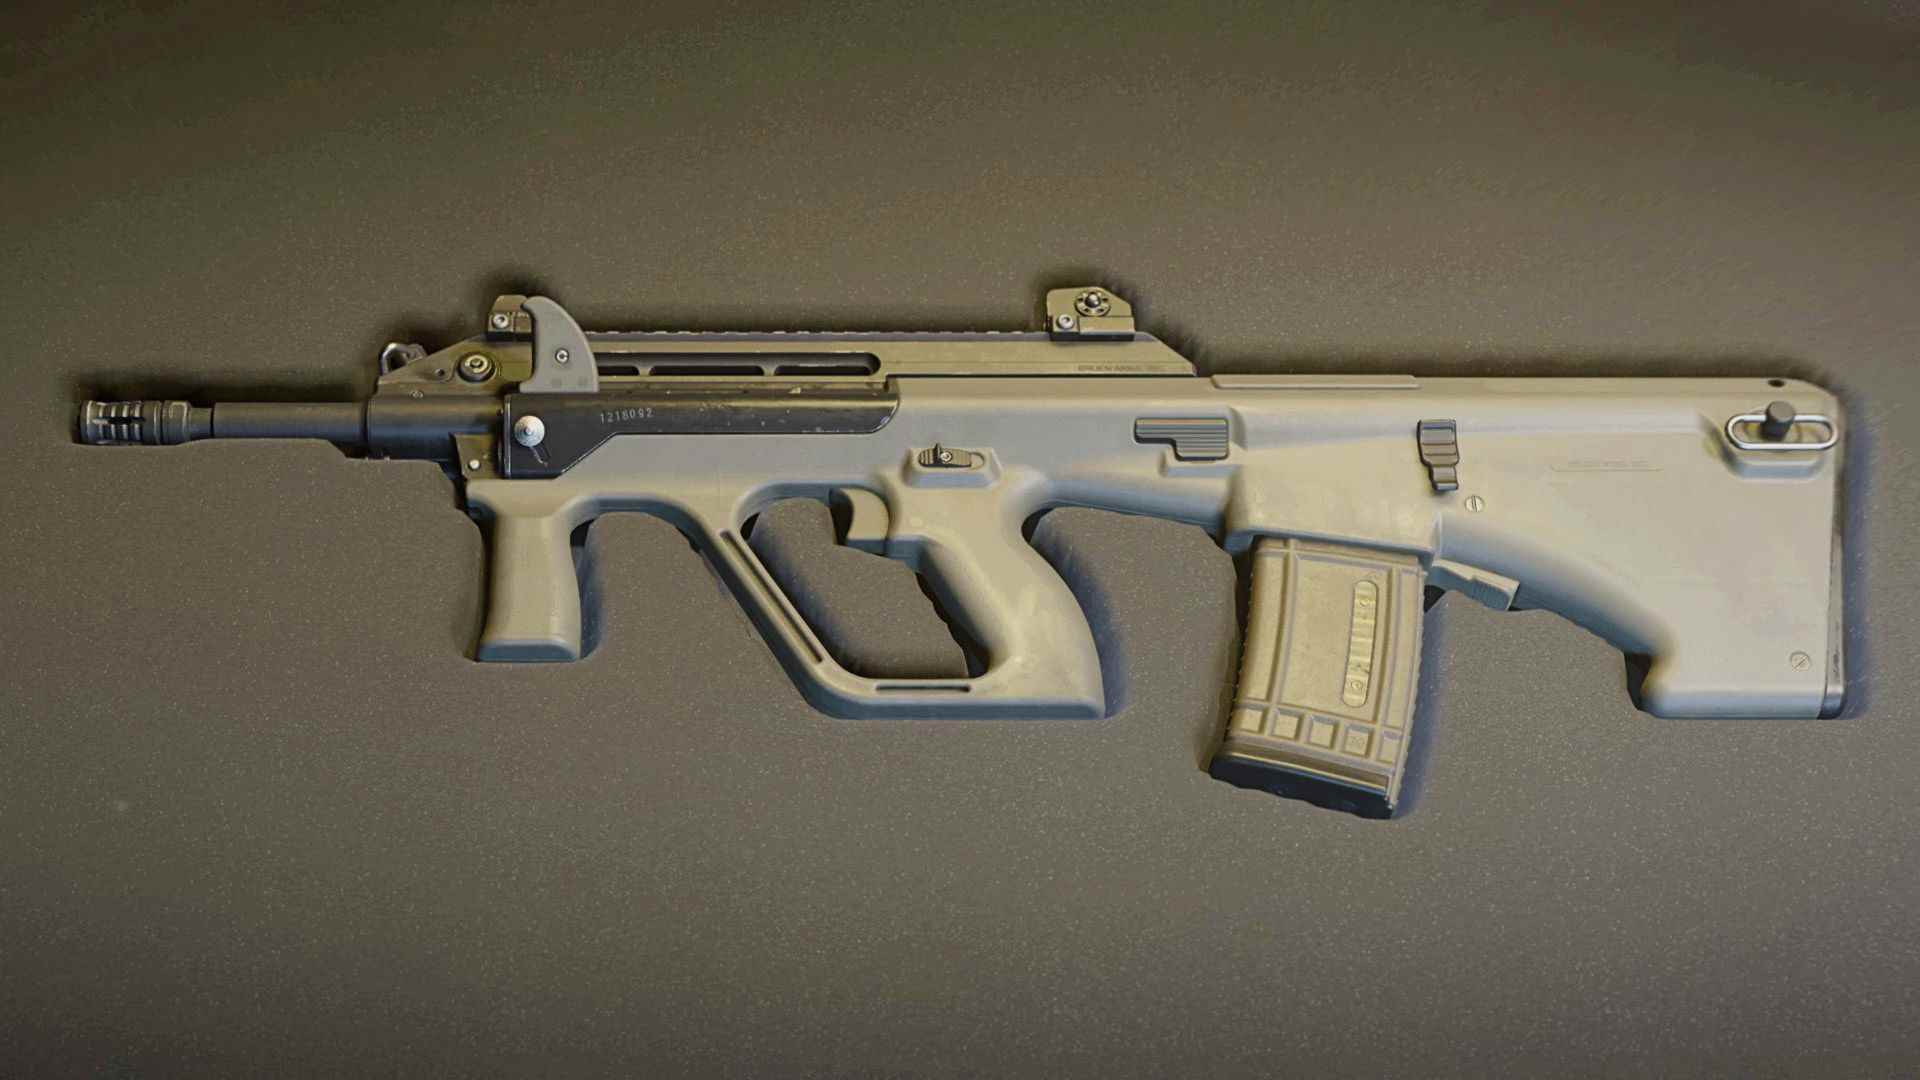 Modern Warfare 2 STB 556 teçhizatı: STB 556, orta ve uzun menzilli saldırı tüfeği, mükemmel kullanım ve hasar çıkışı, kasasında duruyor